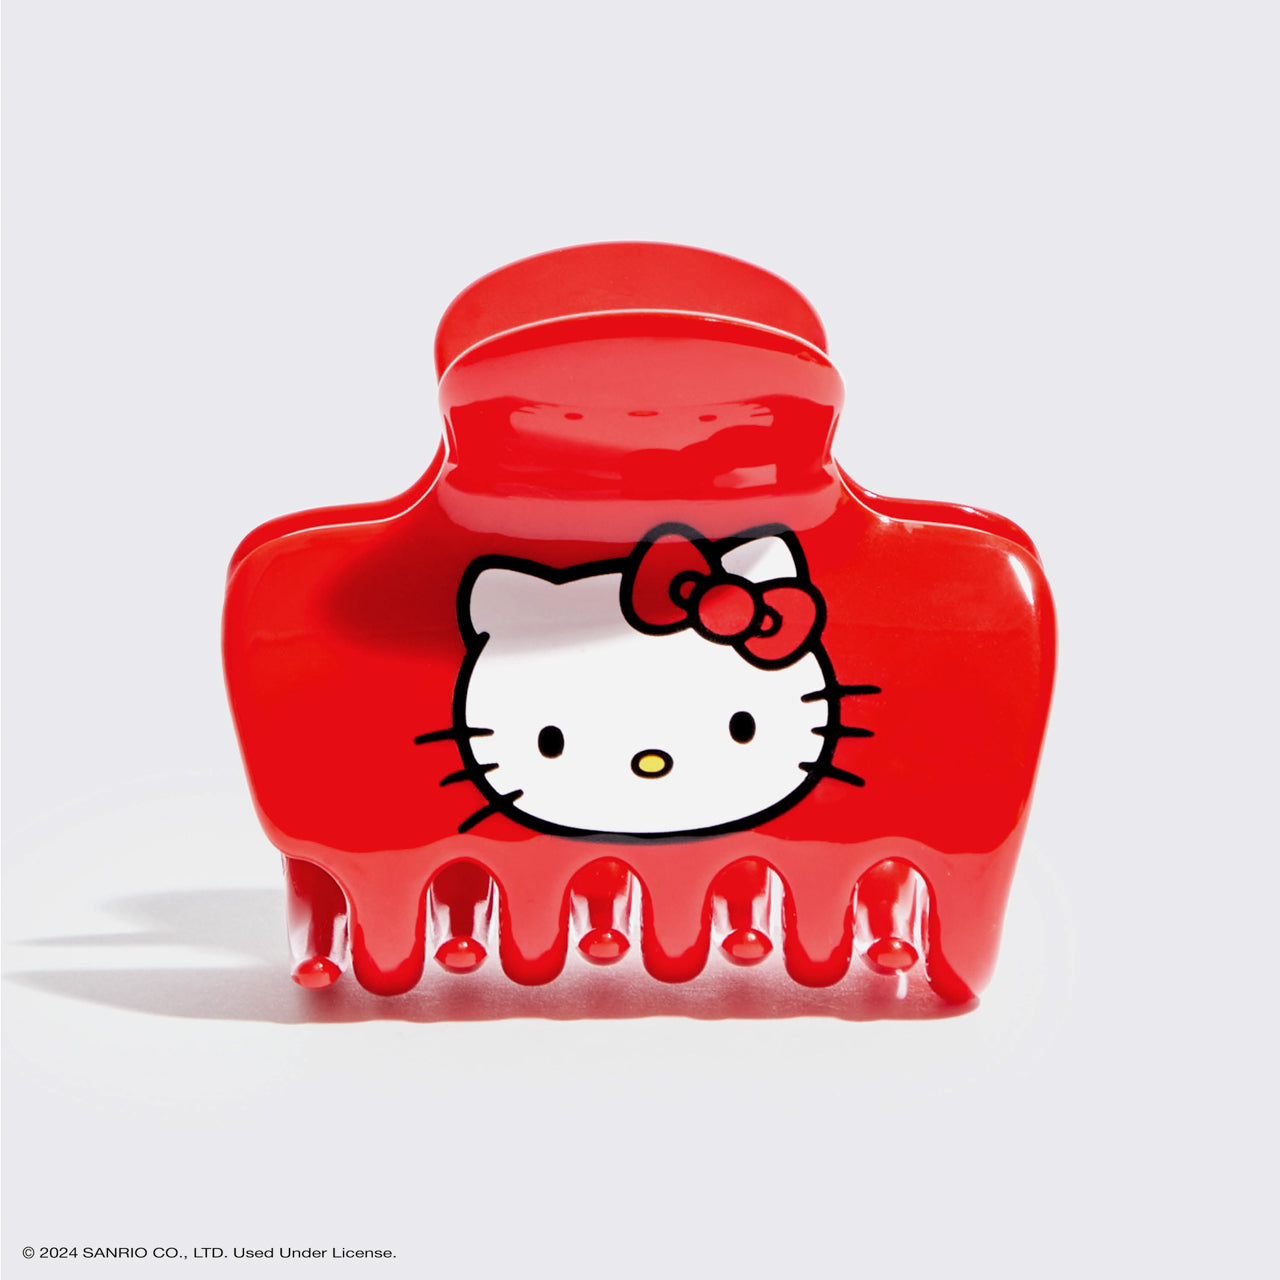 قطعة واحدة من مشبك مخلب منتفخ من البلاستيك المعاد تدويره من Hello Kitty x Kitsch - وجه كيتي